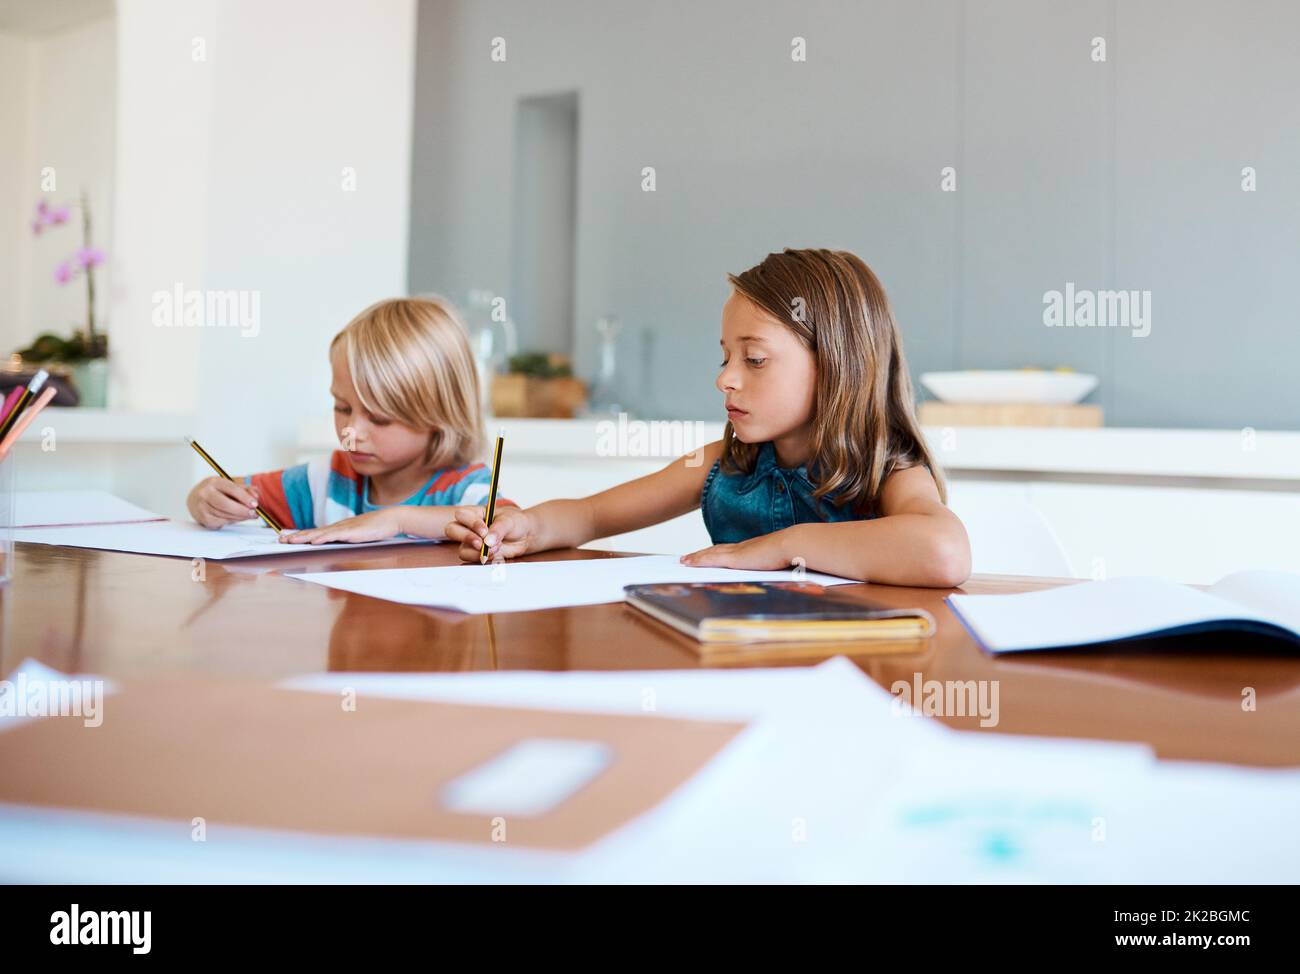 Bildung sollte ihre Grundlage im Leben sein. Aufnahme von zwei entzückenden kleinen Kindern, die zu Hause ihre Hausaufgaben machen. Stockfoto